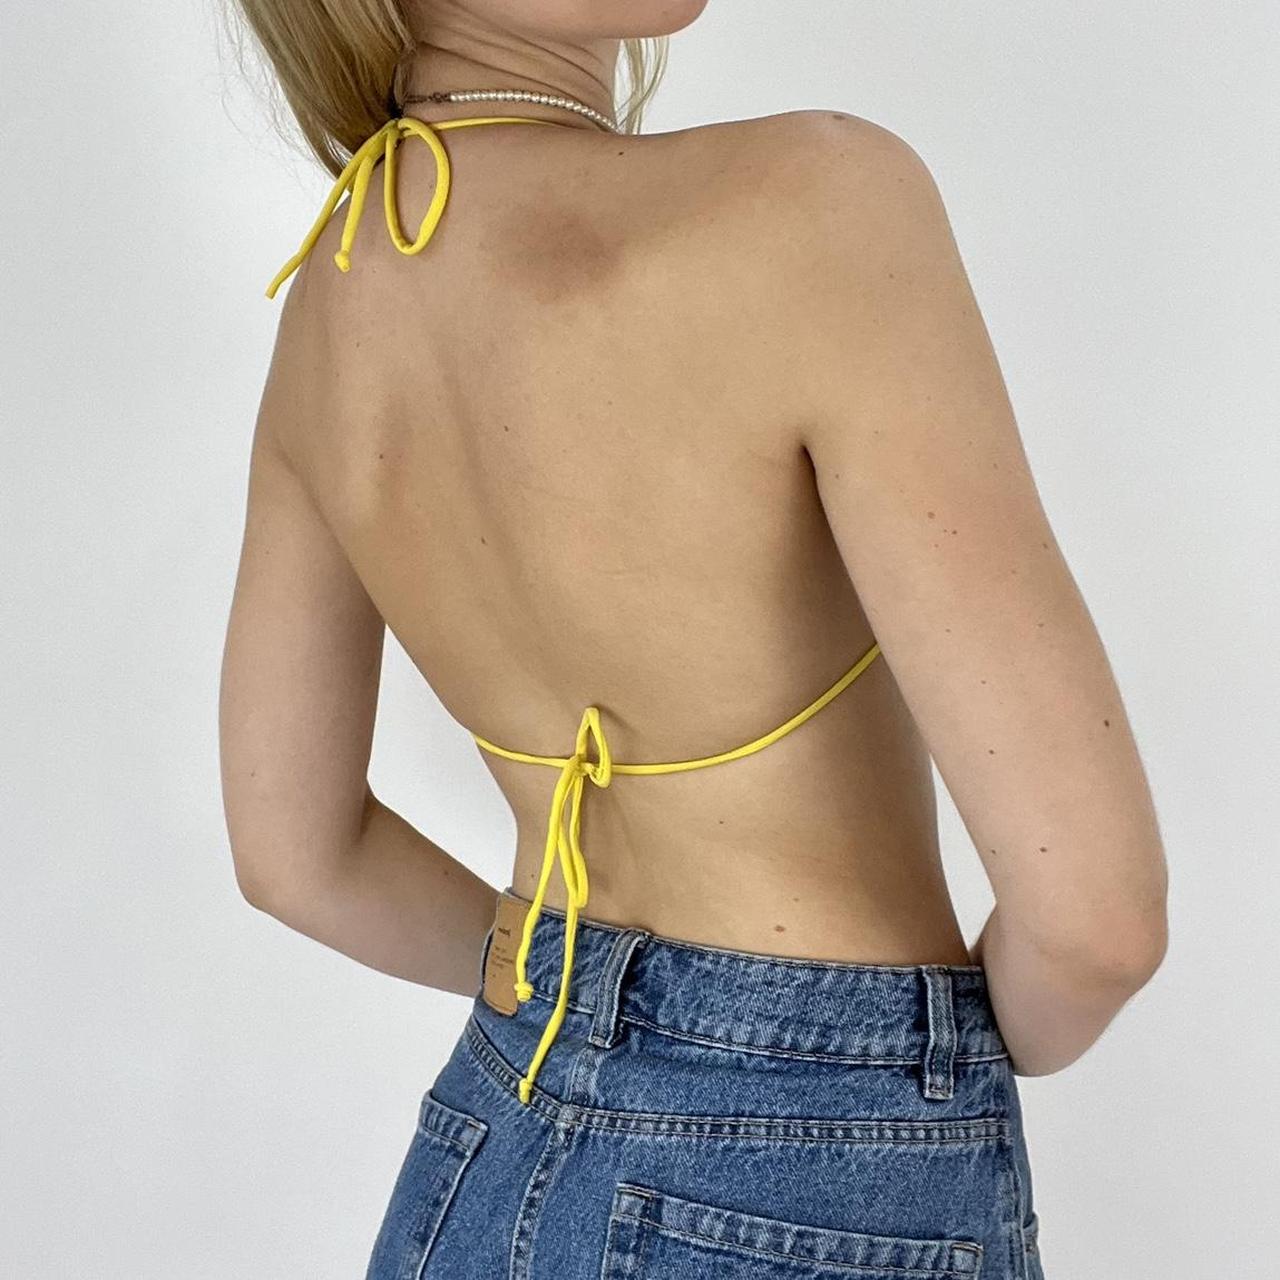 Remass Women's Yellow Bikinis-and-tankini-sets (3)